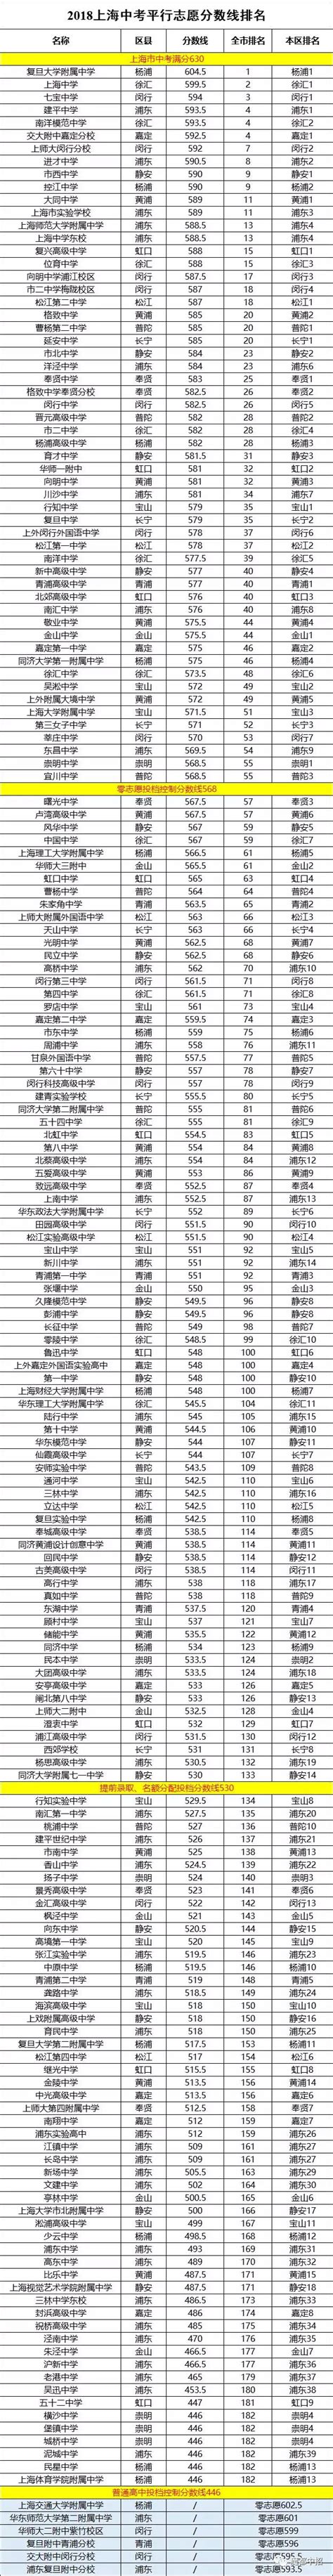 2019上海高中排名对比